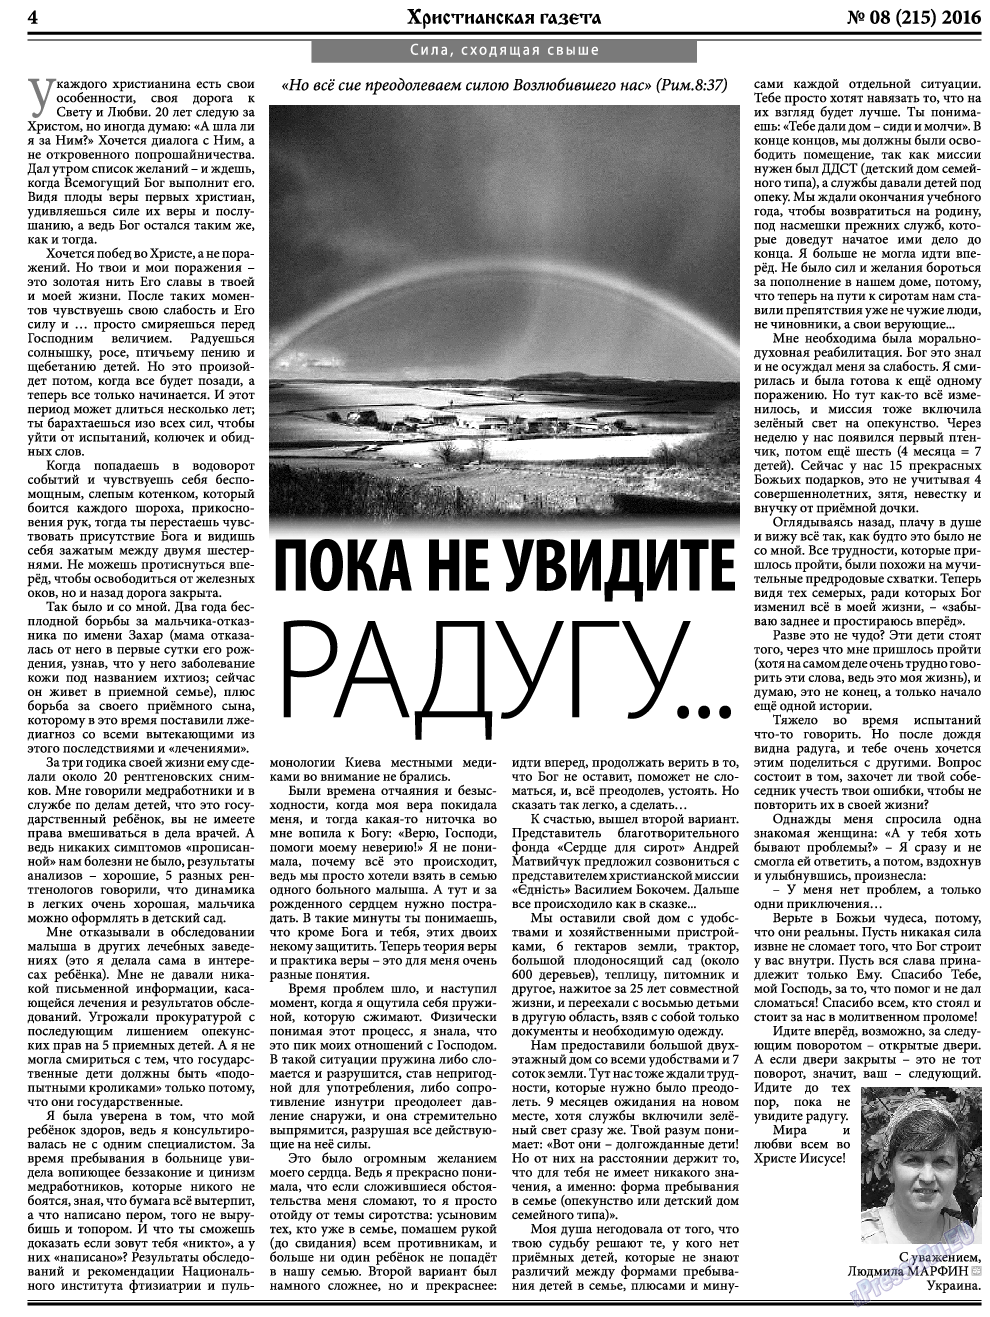 Христианская газета, газета. 2016 №8 стр.4